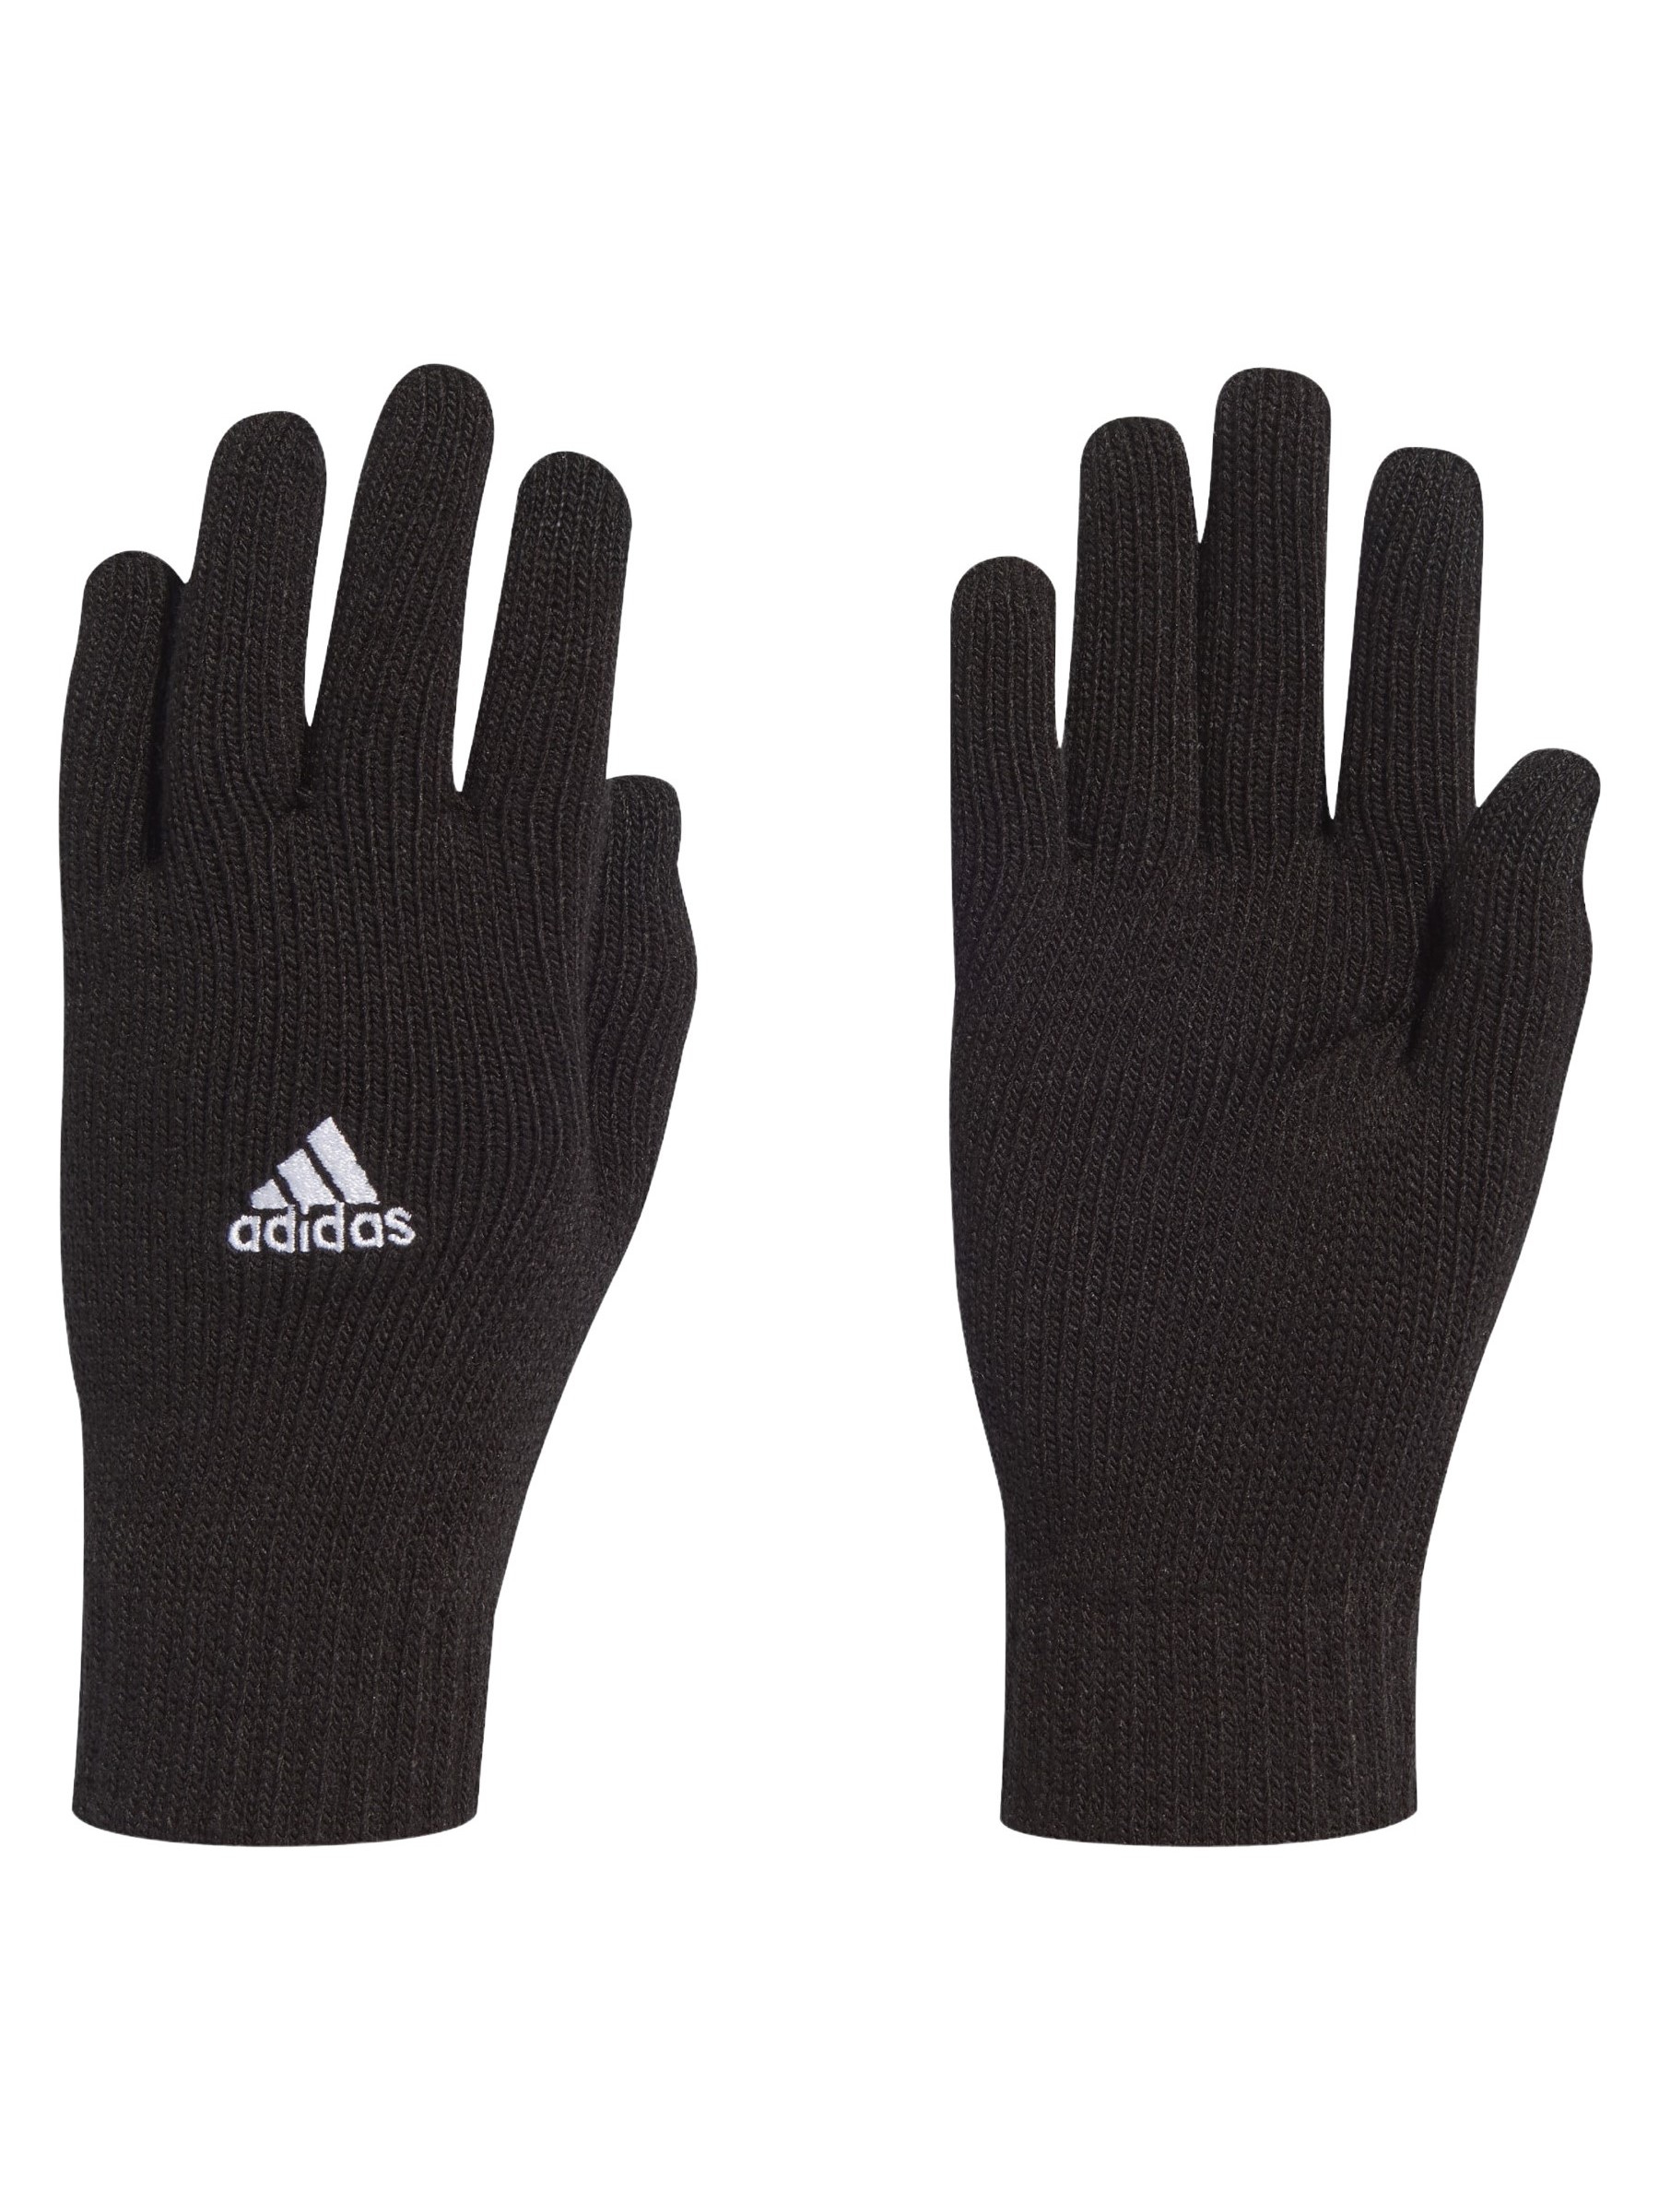 Перчатки унисекс Adidas Tiro Glove черные, р. L